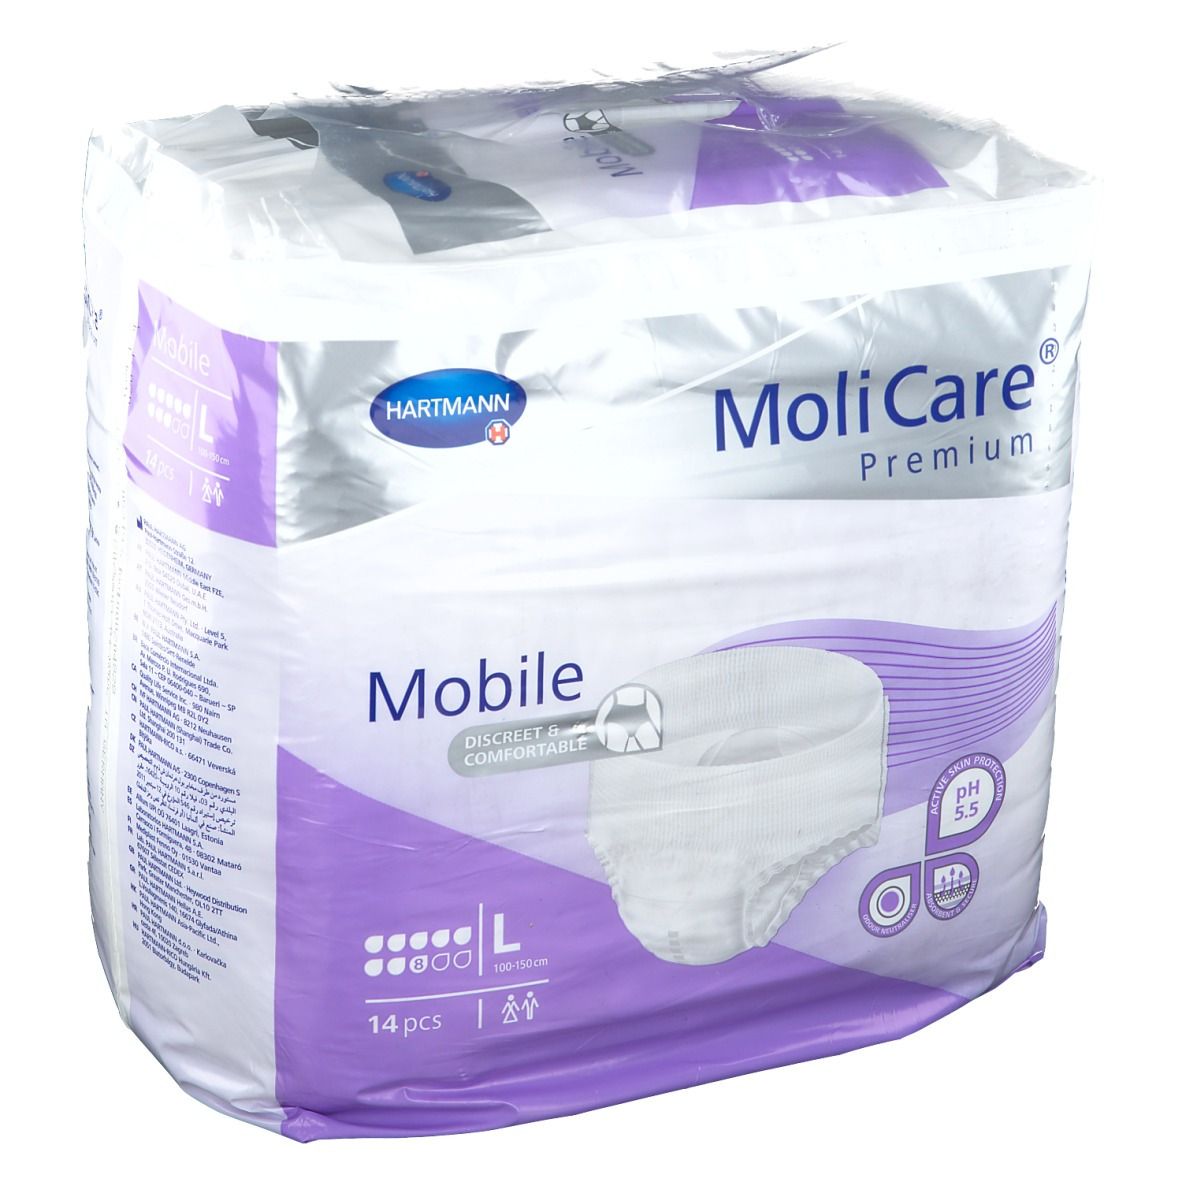 MoliCare® Premium Mobile 8 Tropfen Gr. L